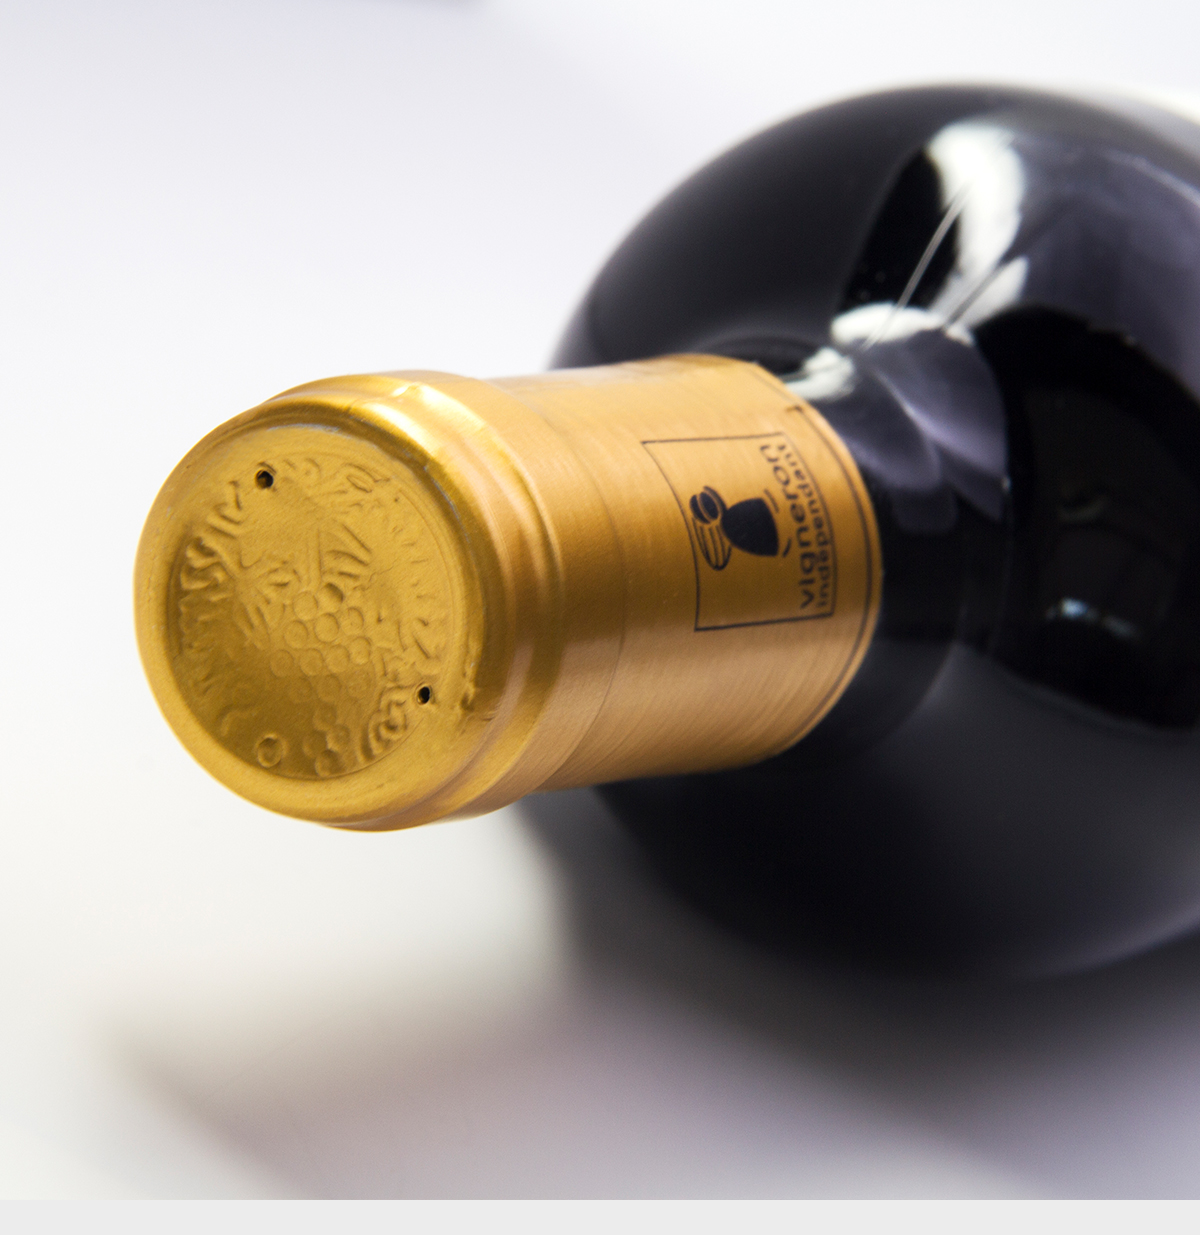 法国奥克地区维克家族1905酒庄星龄品牌赤霞珠IGP干红葡萄酒